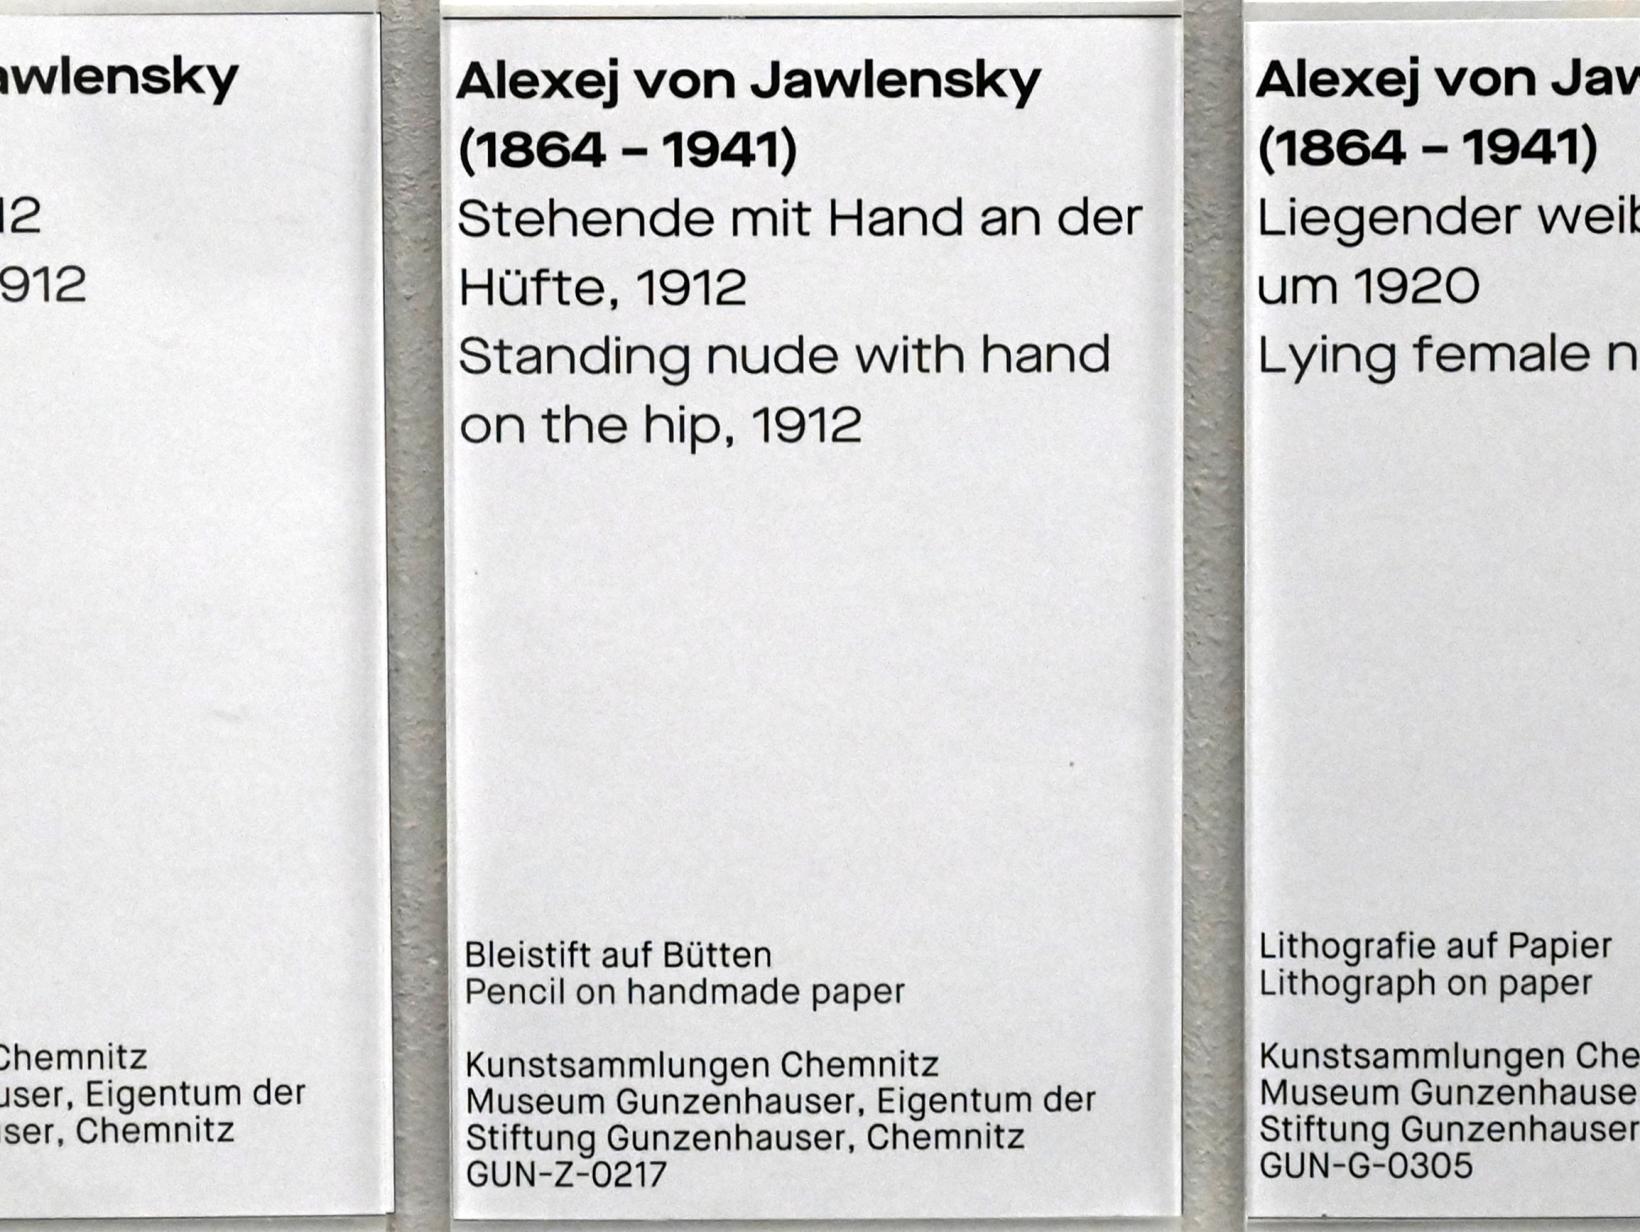 Alexej von Jawlensky (1893–1938), Stehende mit Hand an der Hüfte, Chemnitz, Museum Gunzenhauser, Saal 3.8 - Alexej von Jawlensky, 1912, Bild 3/3